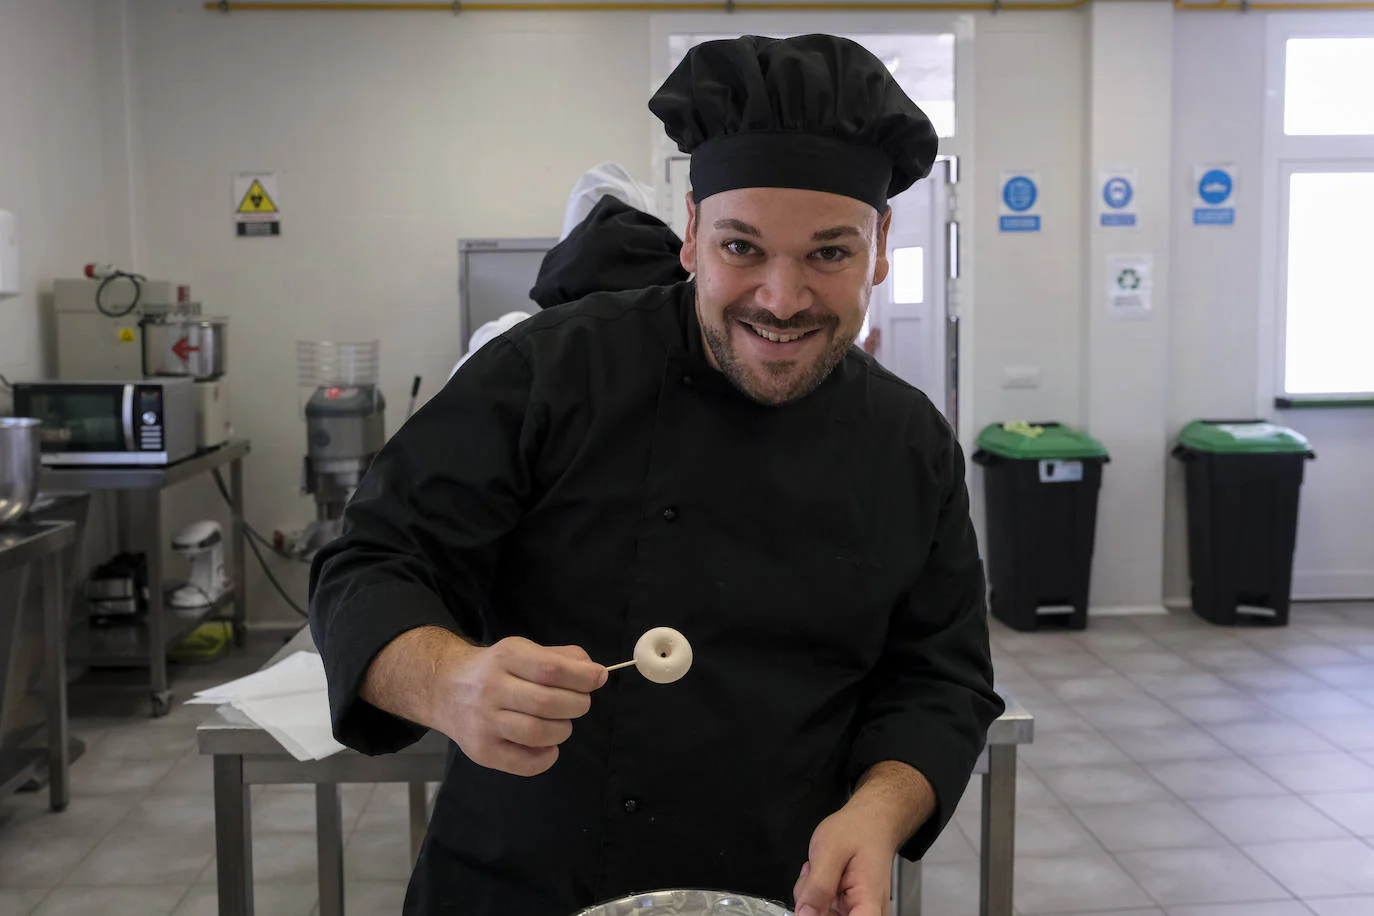 Fotos: La Escuela de Cocina y Hostelería de Ingenio pondrá su excelencia al servicio de la Feria del Sureste